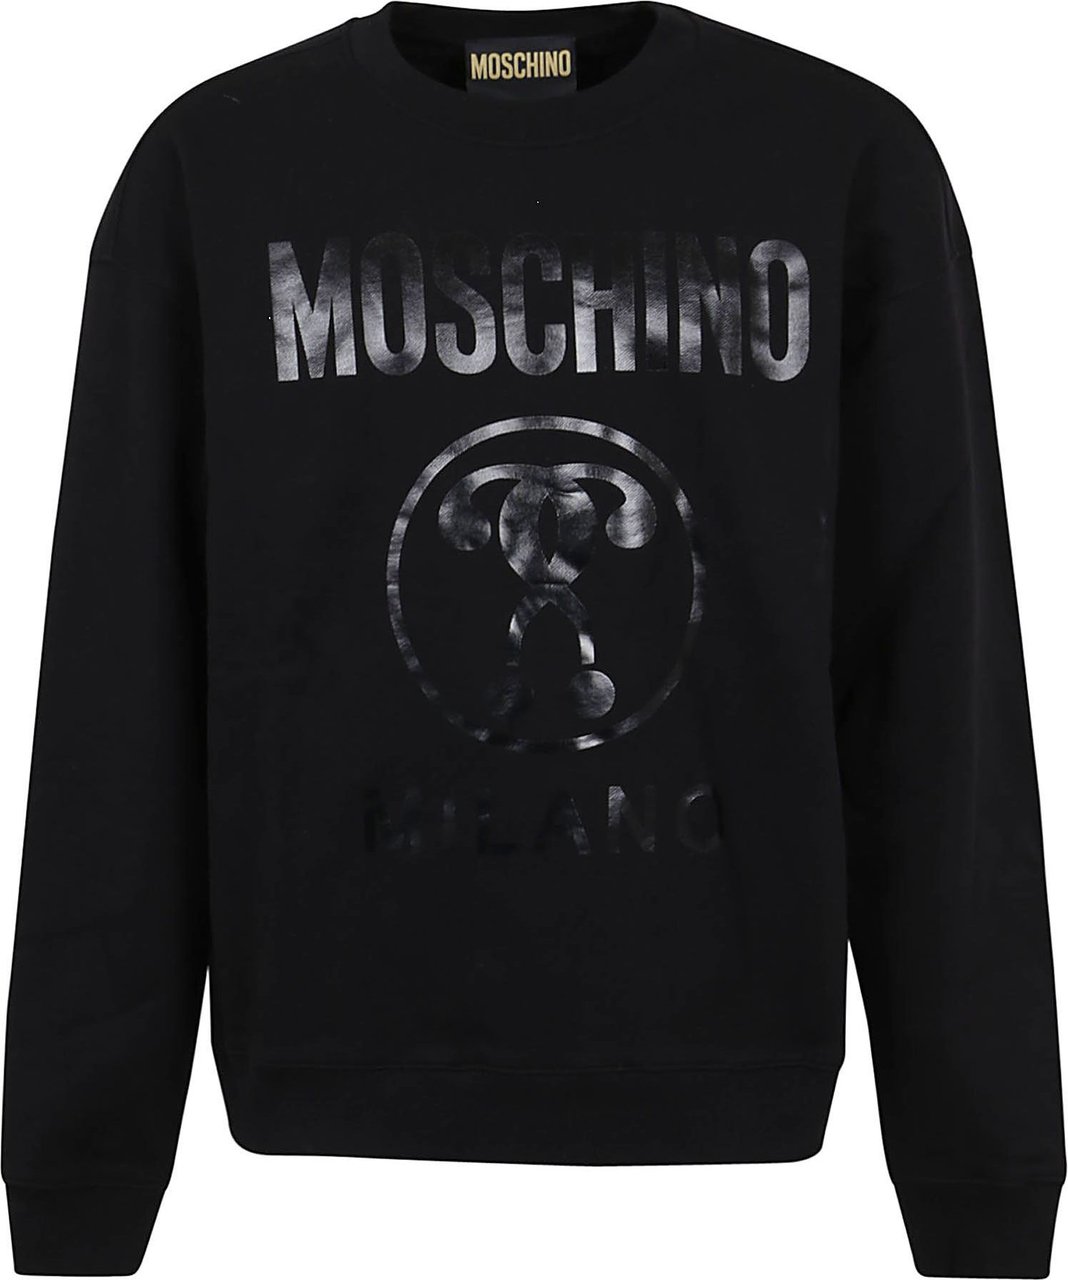 Moschino Institutional Sweatshirt Divers